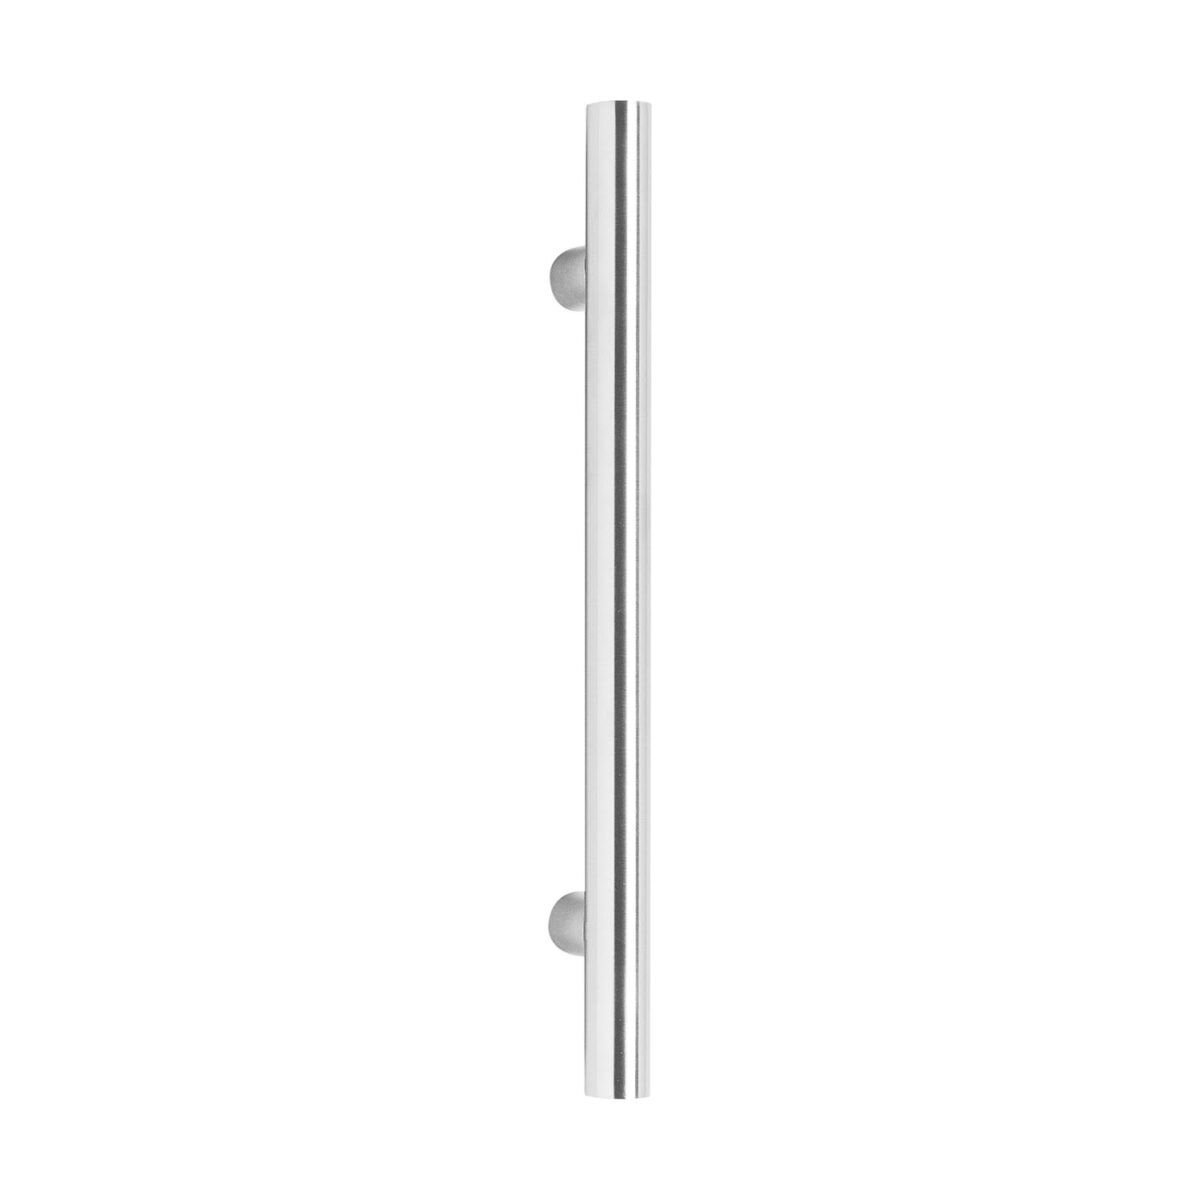 Intersteel Door handles 400 mm T shape brushed stainless steel